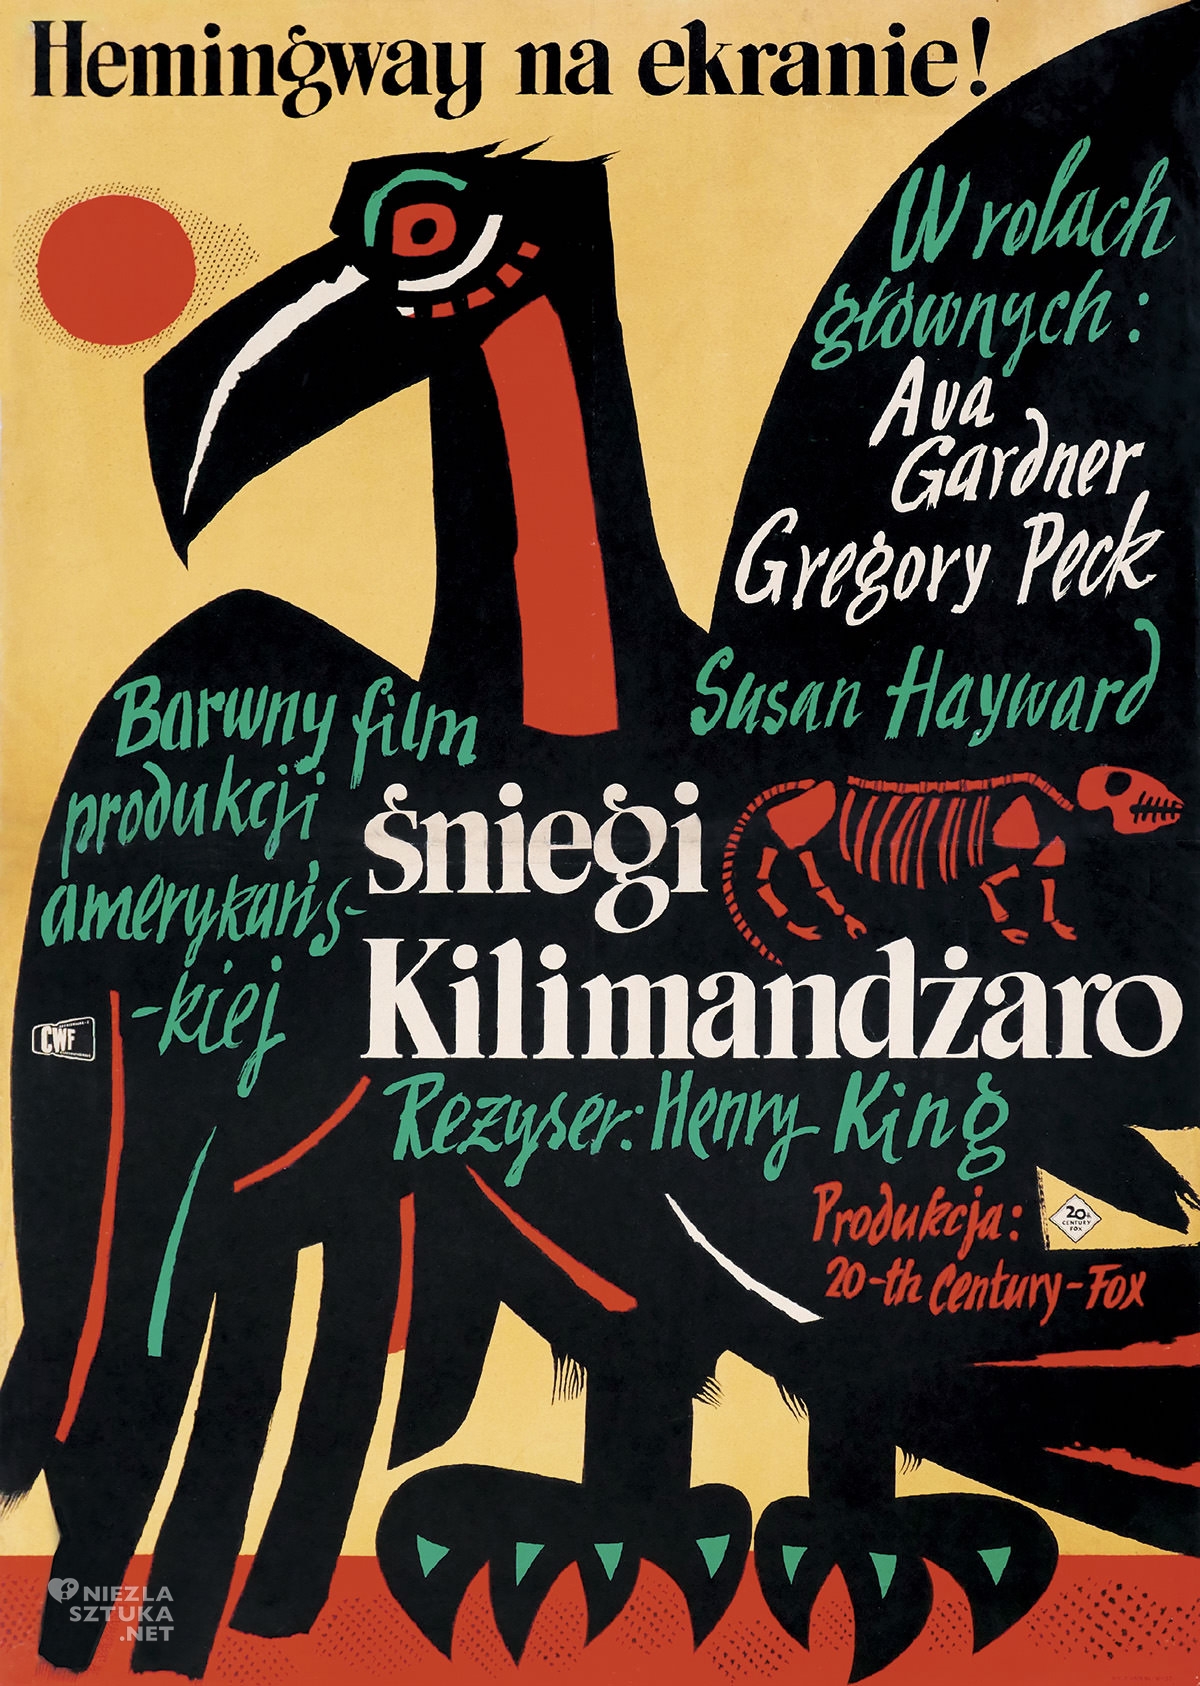 Marian Stachurski, Śniegi Kilimandżaro, polski ilustrator, polska ilustracja, plakat, niezła sztuka